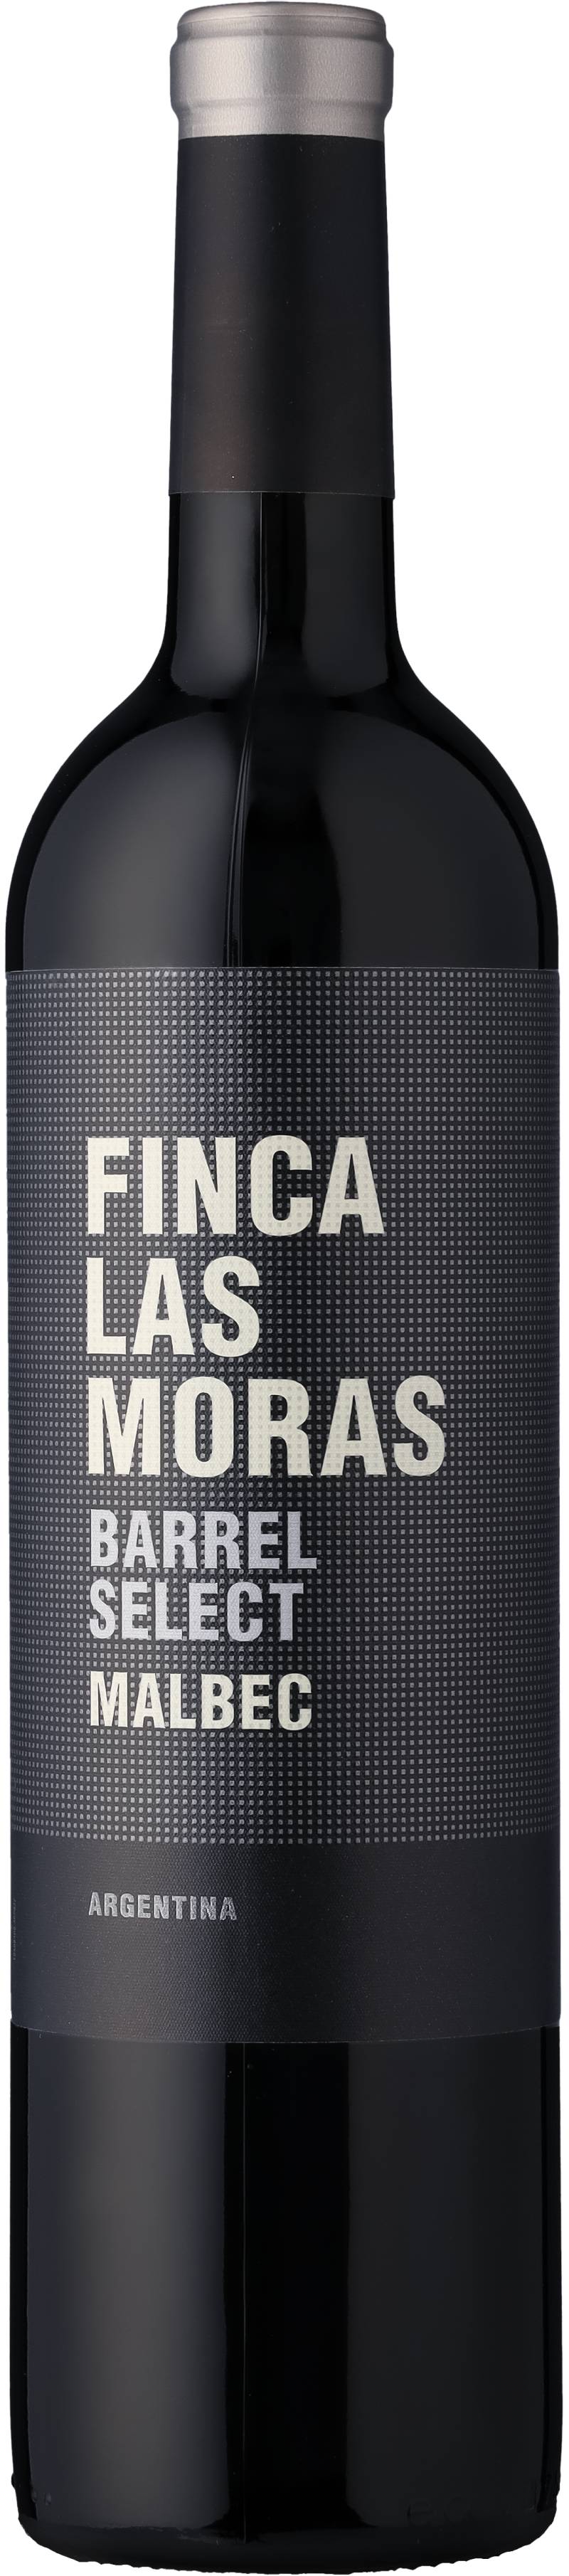 Finca Las Moras Barrel Select Malbec